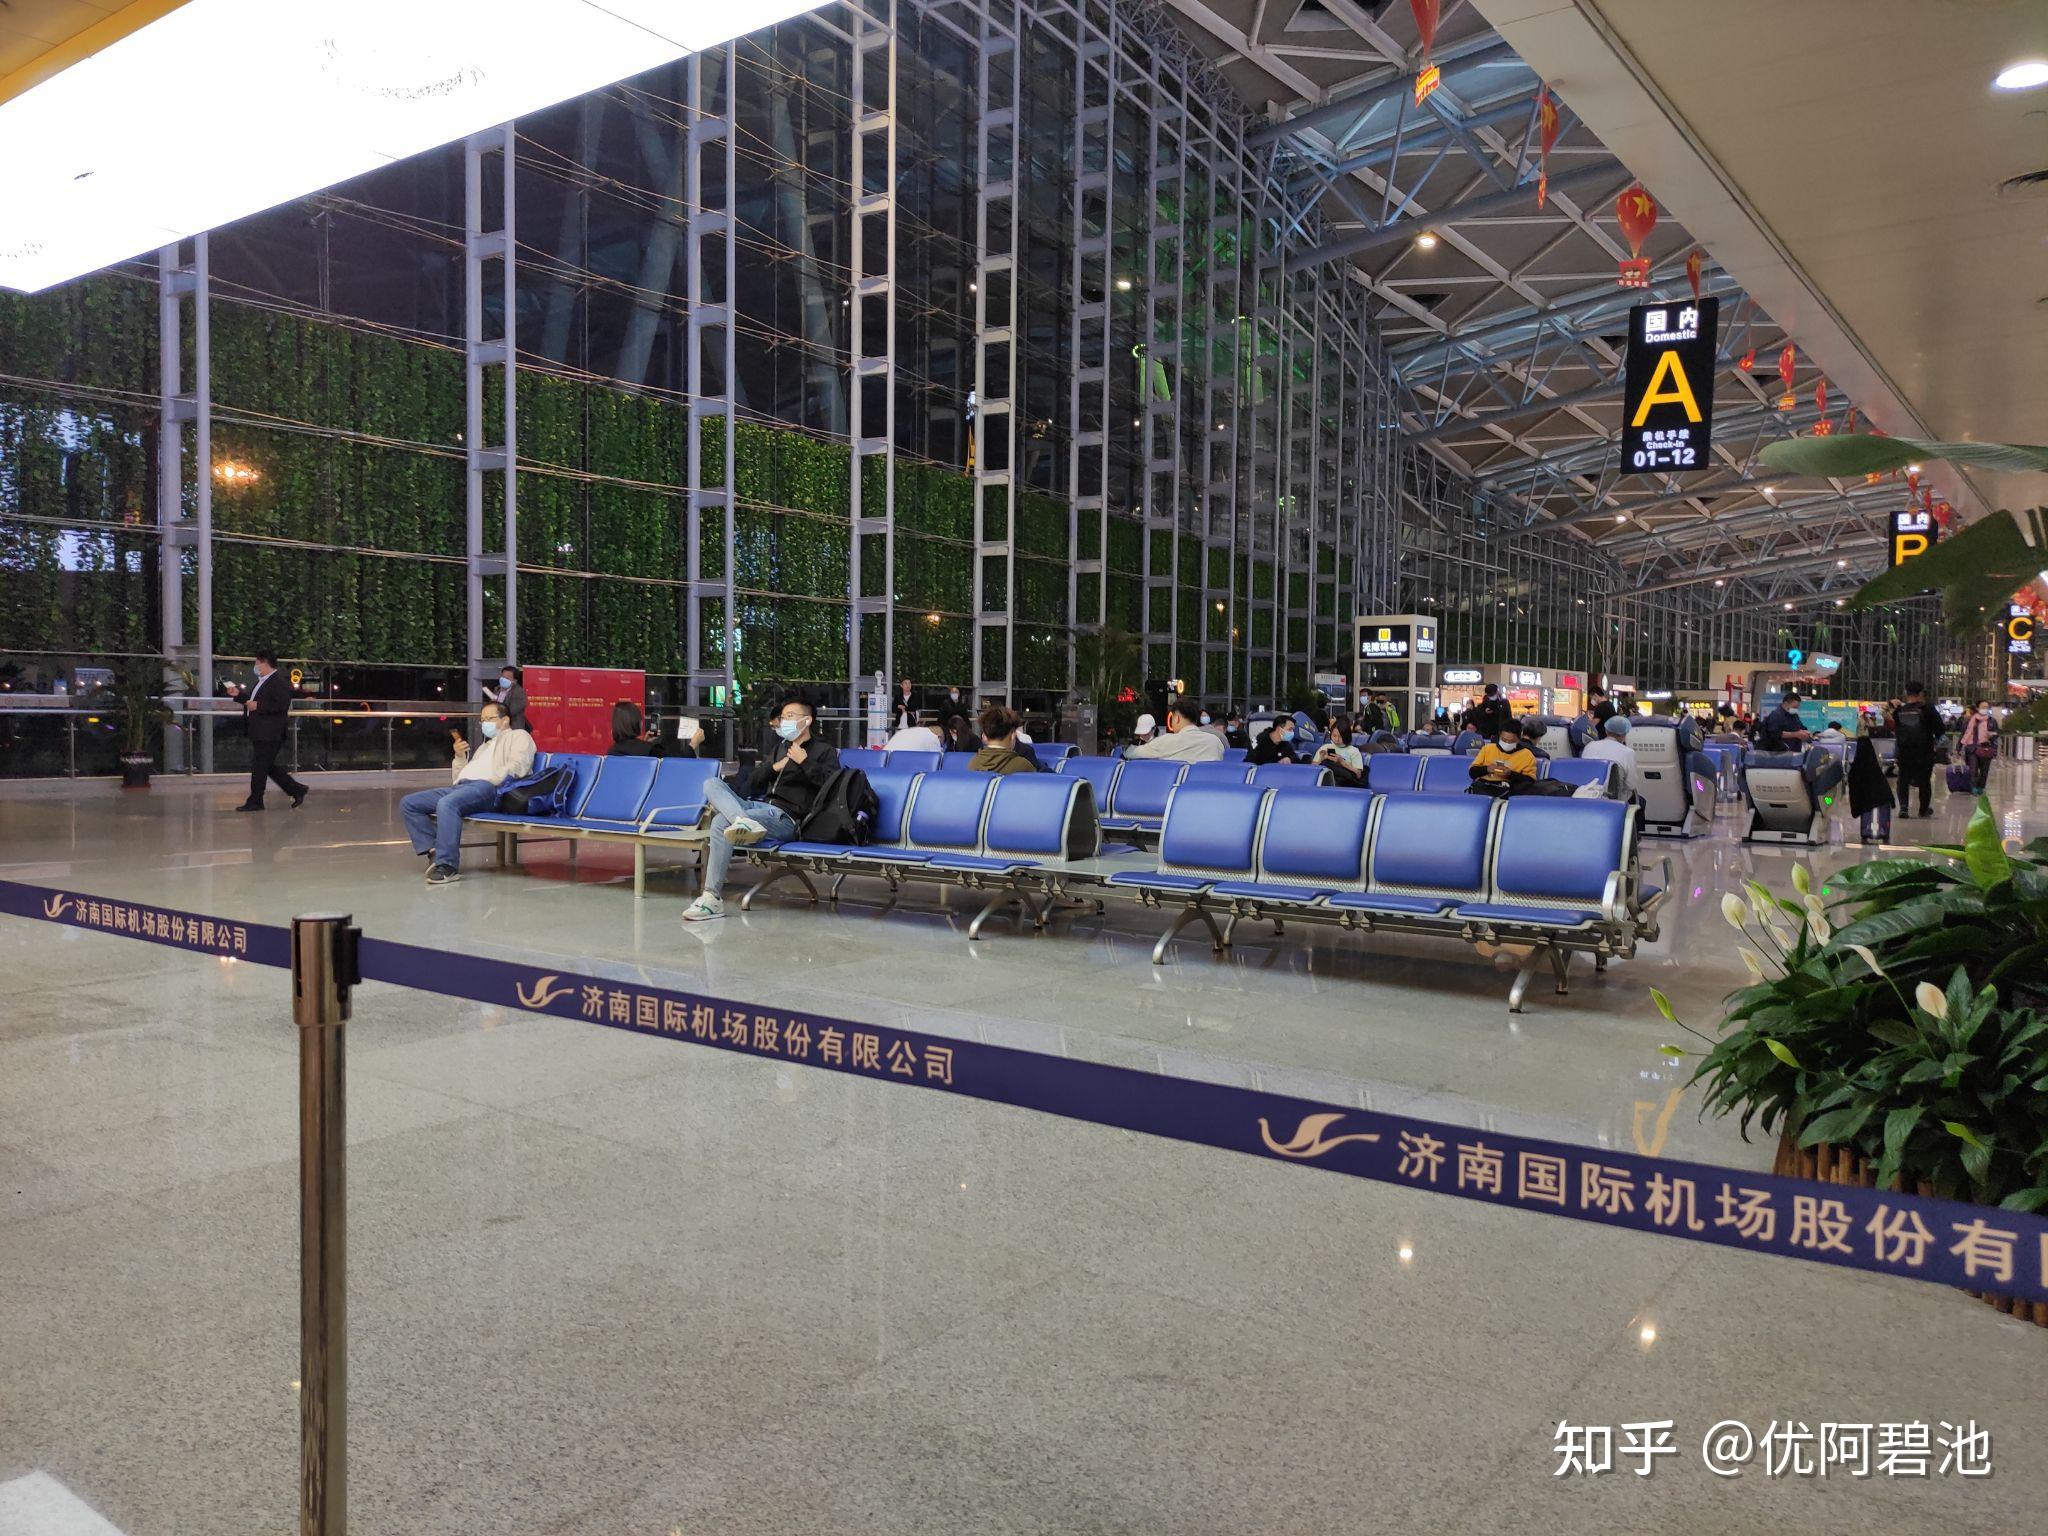 本人第一次来济南机场,发现出发层到达层都没有充电桩,只有候机区域有